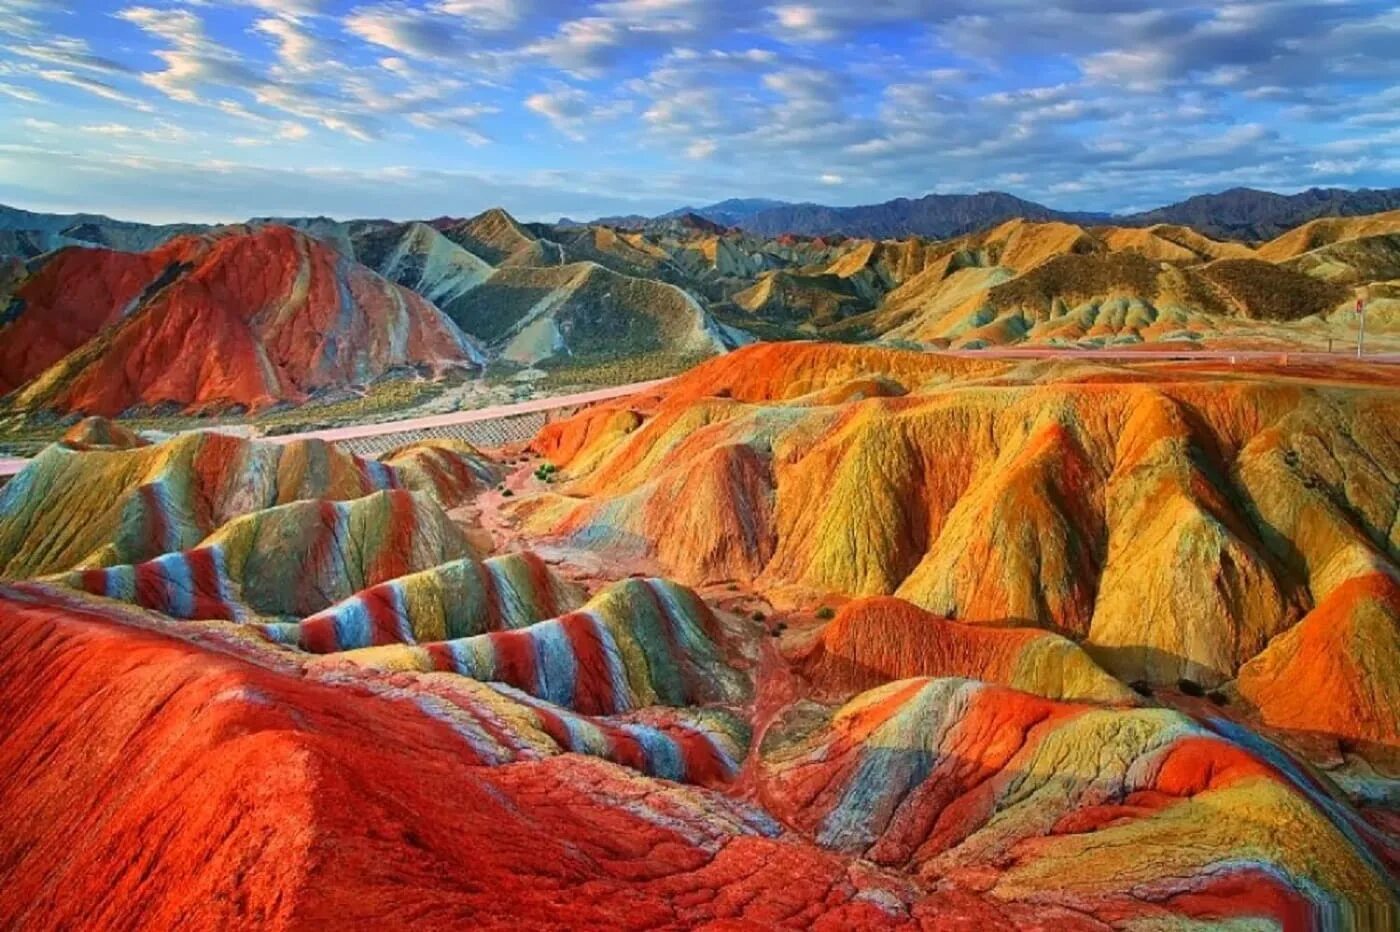 Уникальный тип. Чжанъе Данксиа. Чжанъе Данься. Цветные скалы Чжанъе Данксиа Китай. Ландшафт Дэнксия (Danxia landform), Китай.